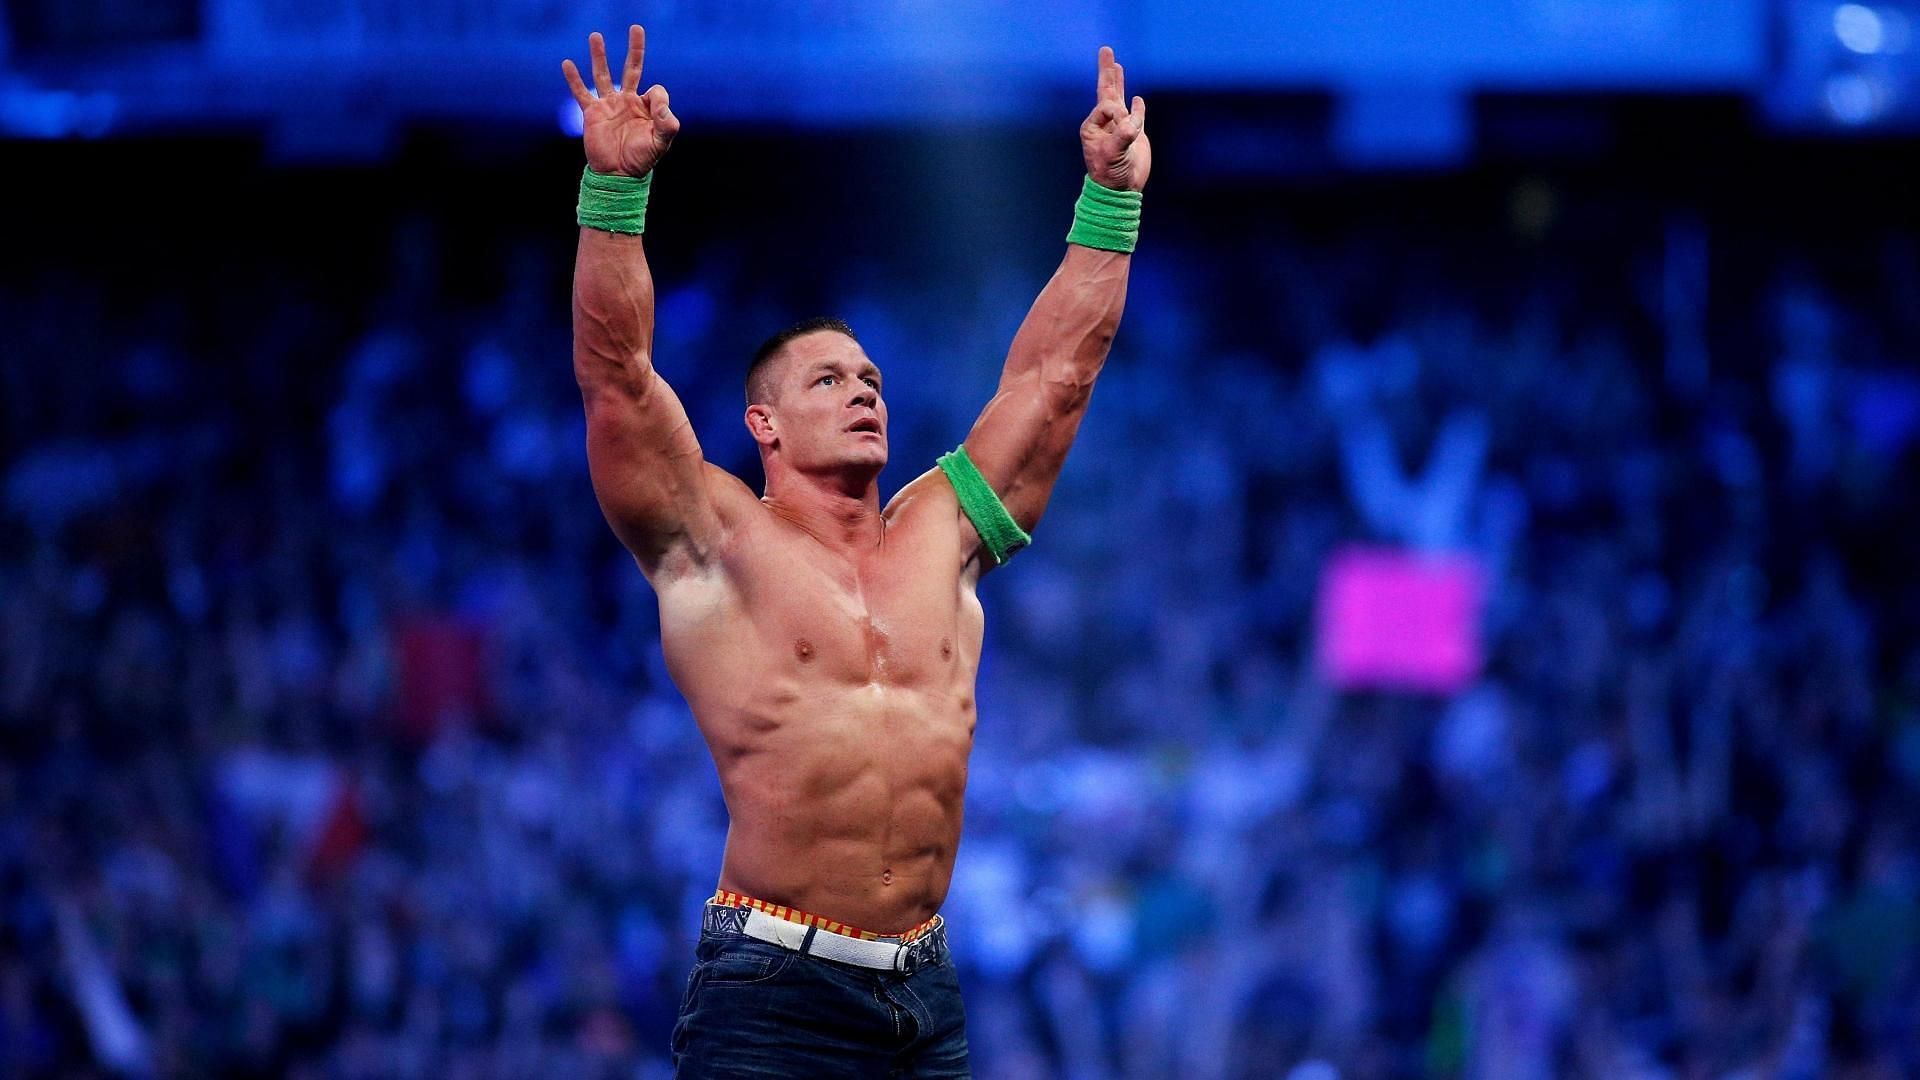 John Cena is a certified legend in WWE